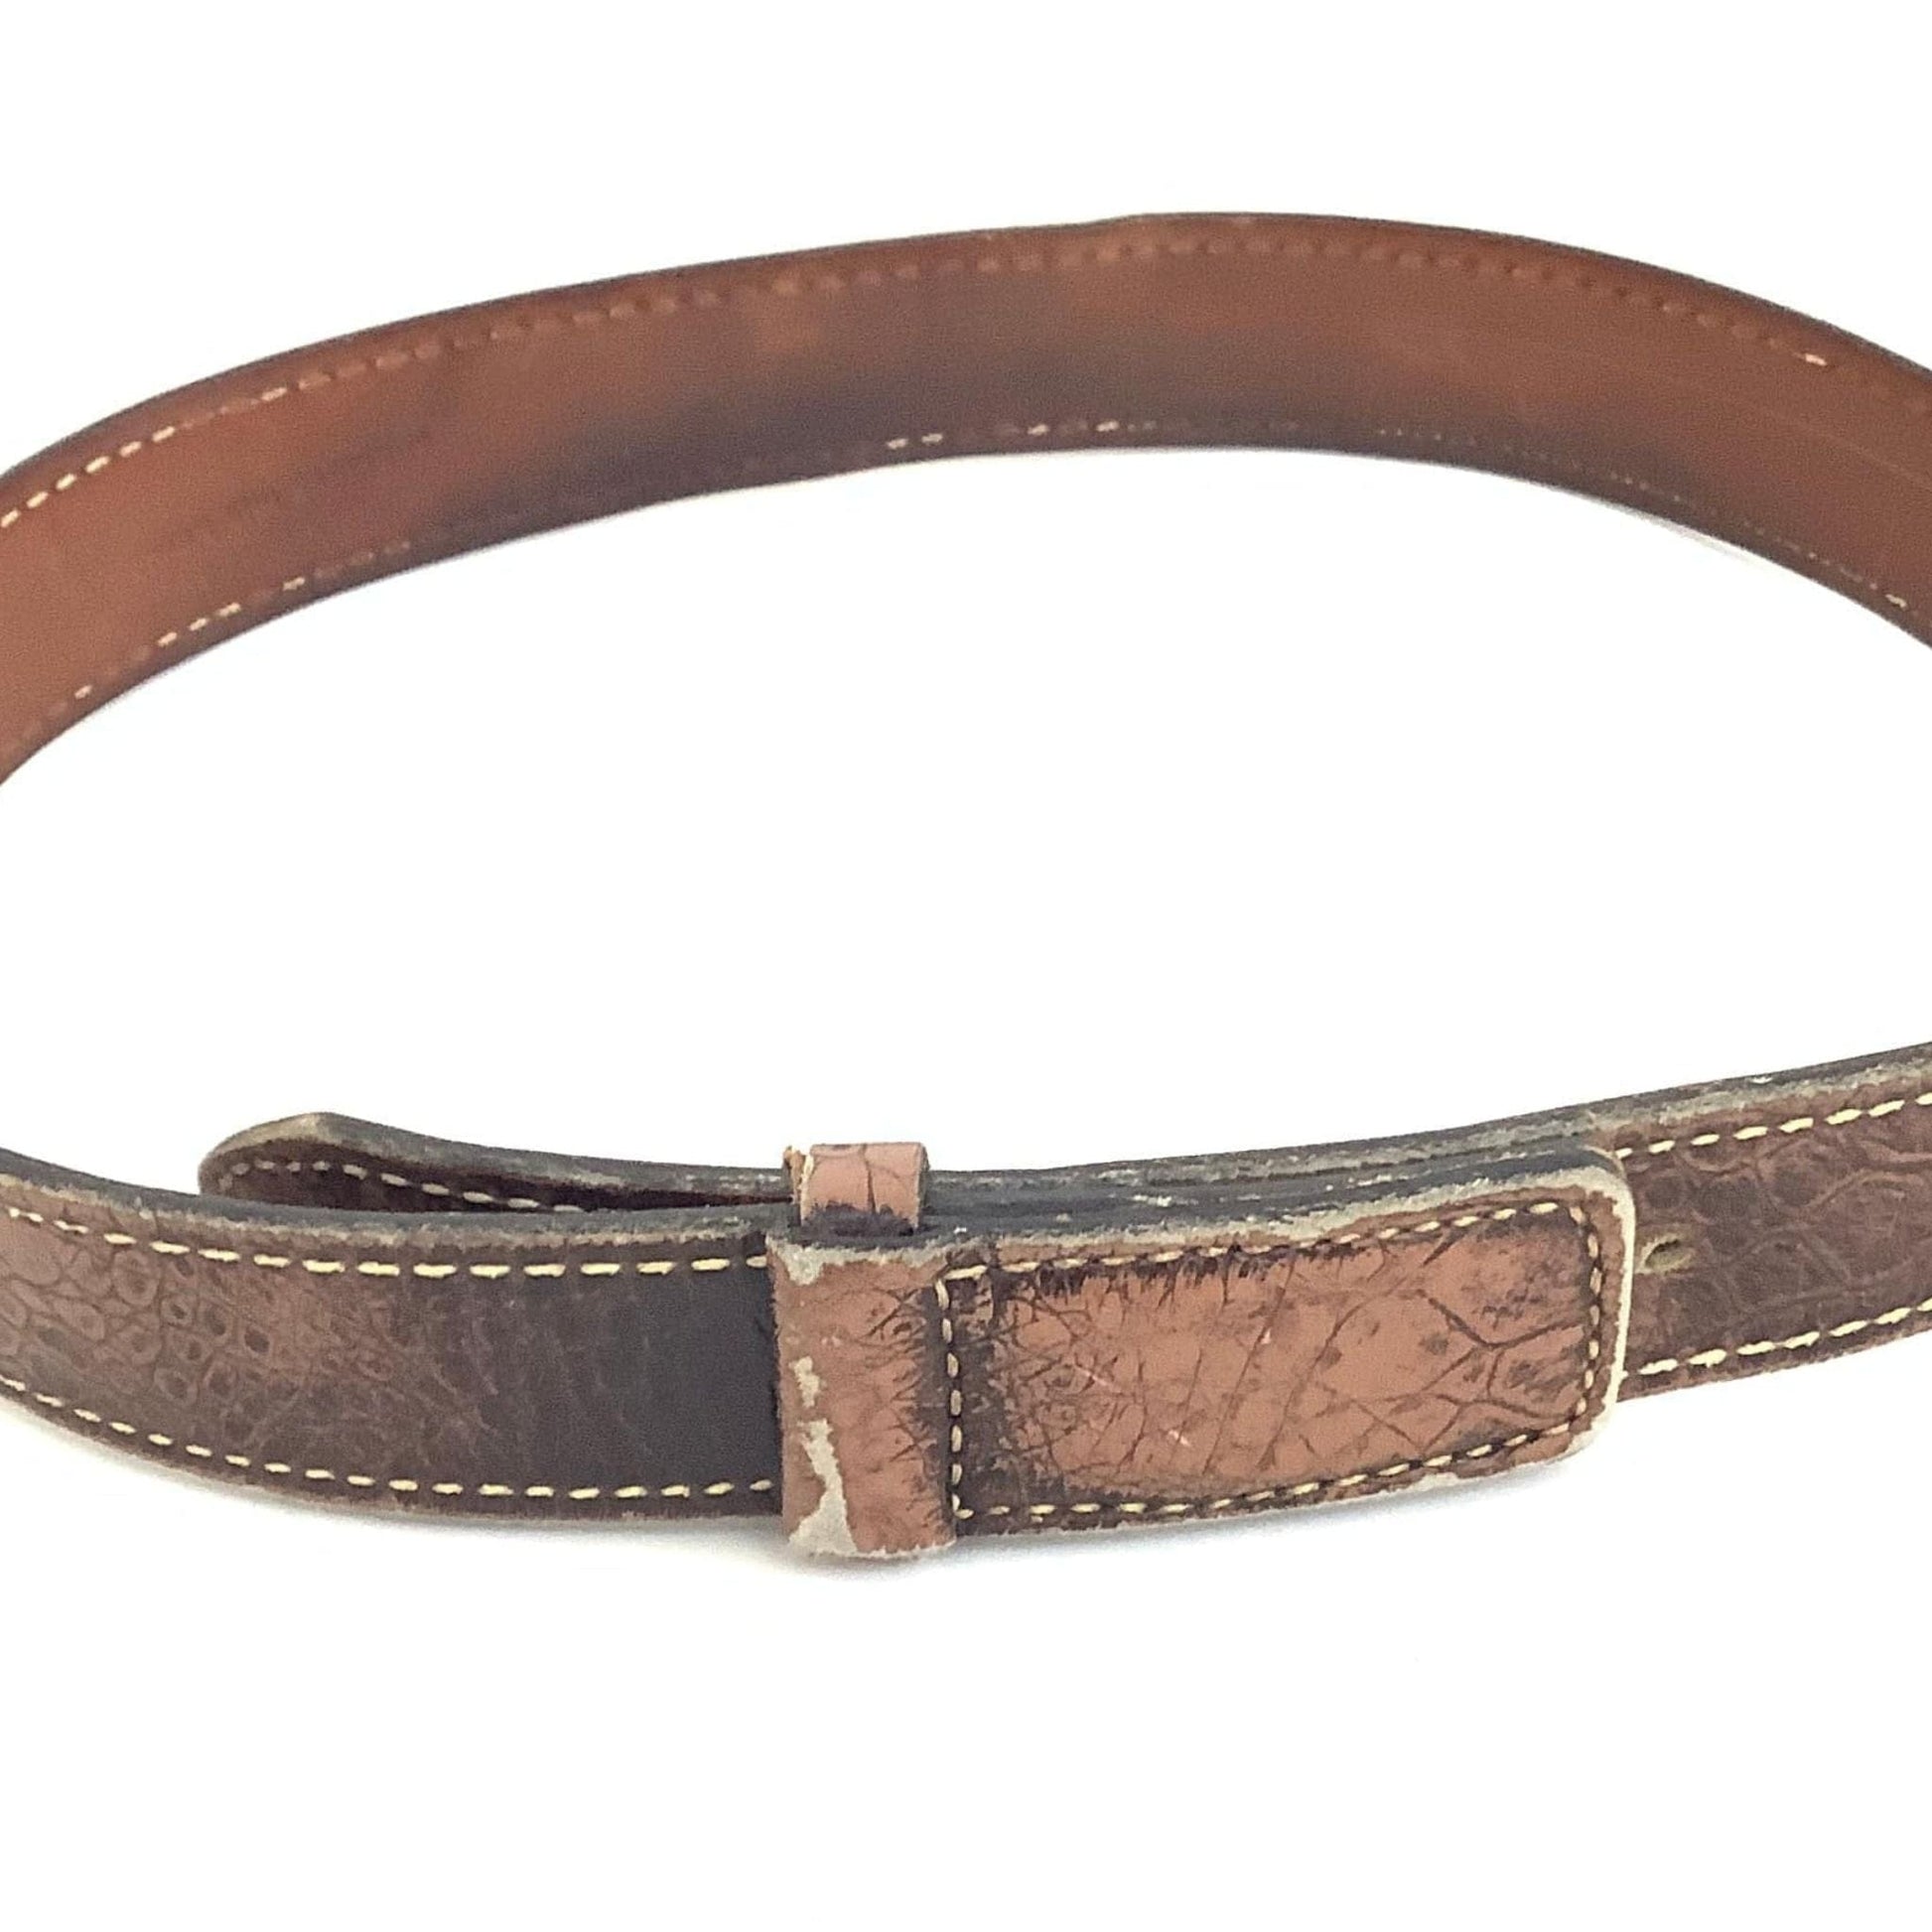 1940s Ranchwear Belt Medium / Brown / Vintage 1940s